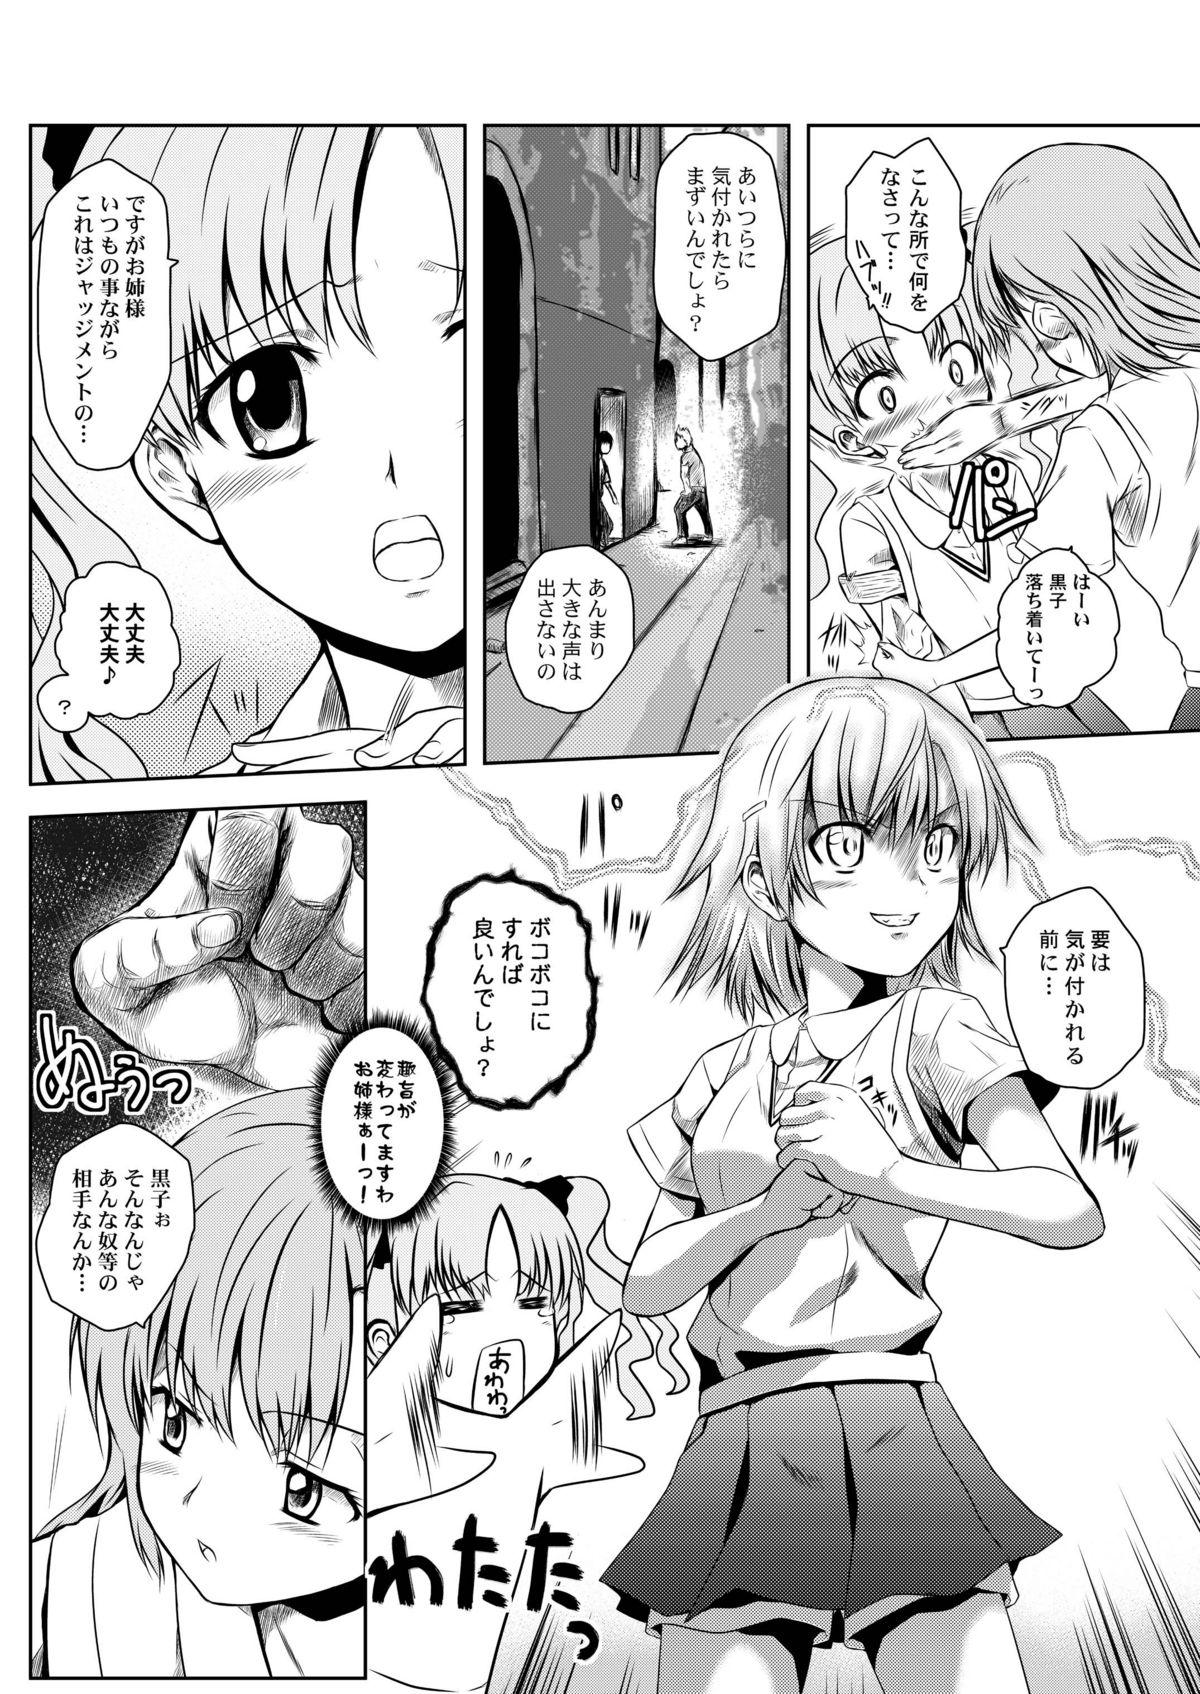 Lima Toaru Tokumei Kibou ni Goyoujin - Toaru kagaku no railgun Threesome - Page 5